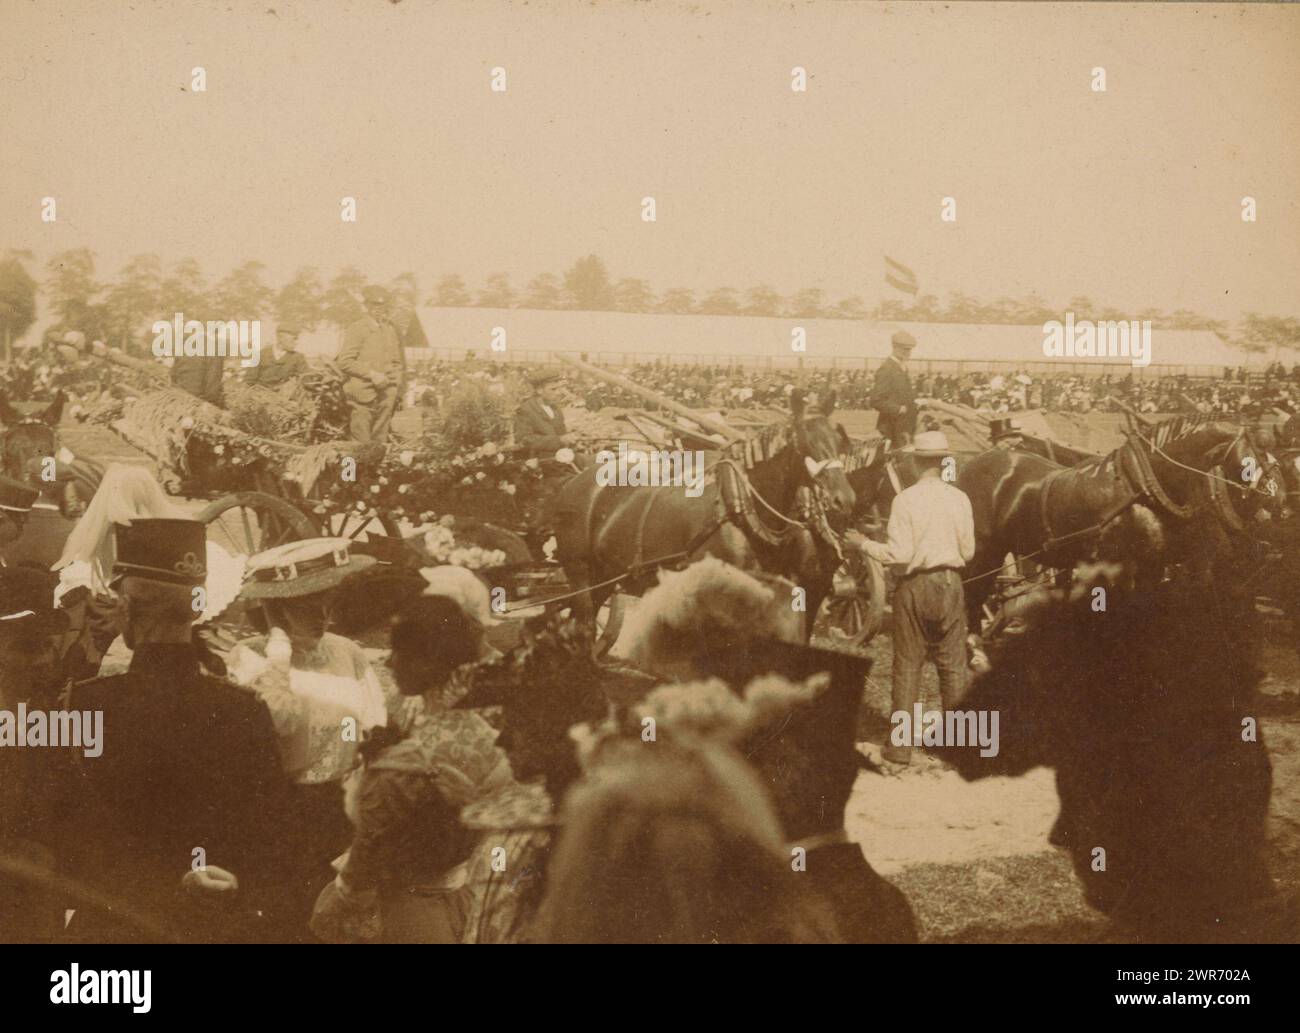 Mostra con i cavalli, probabilmente nei Paesi Bassi, anonimo, Paesi Bassi, c. 1895 - c. 1905, carta baryta, altezza 139 mm x larghezza 177 mm, fotografia Foto Stock